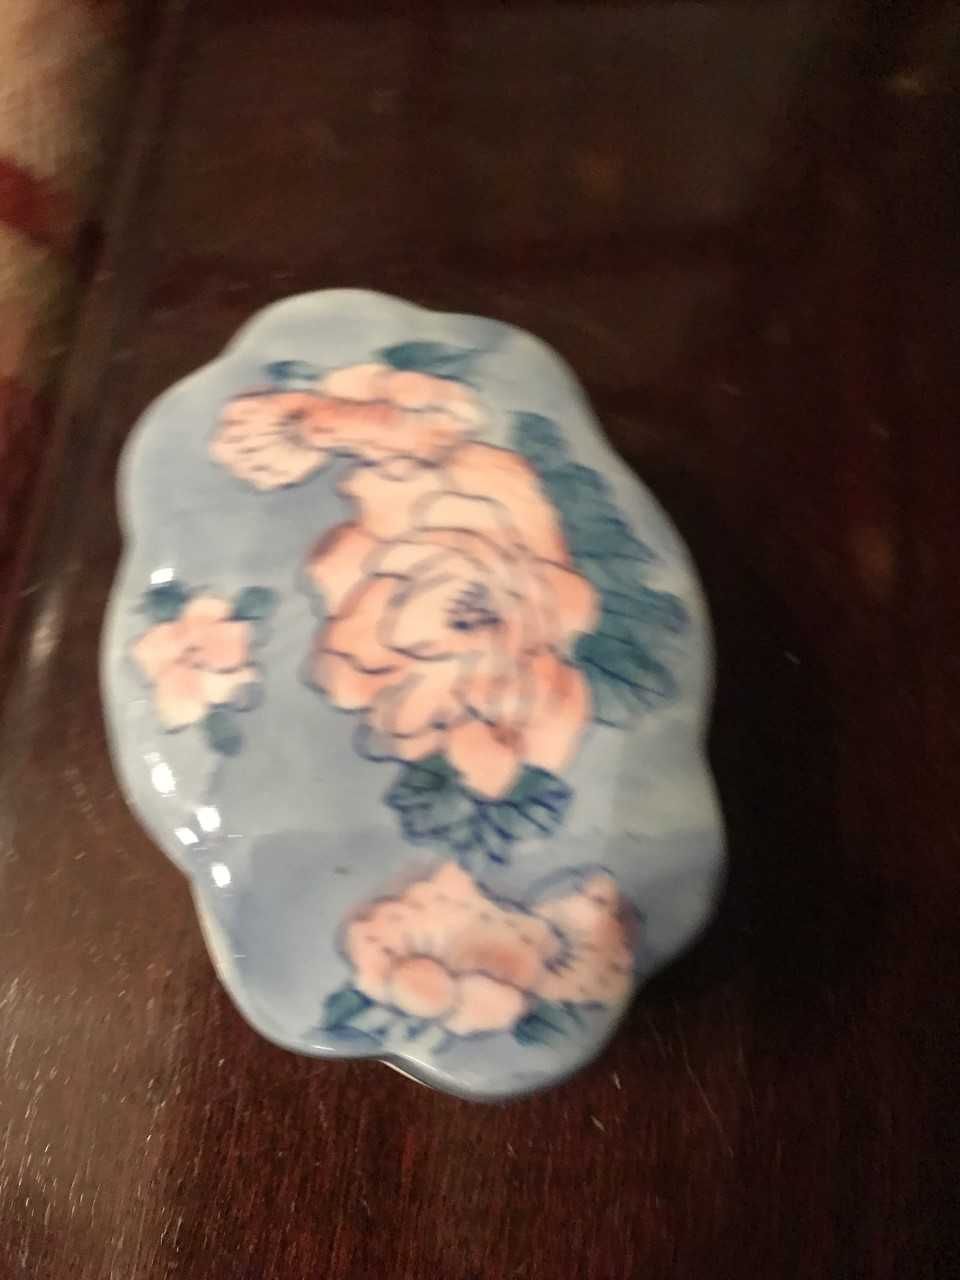 Caixa e pequeno bule porcelana azul com nenúfares